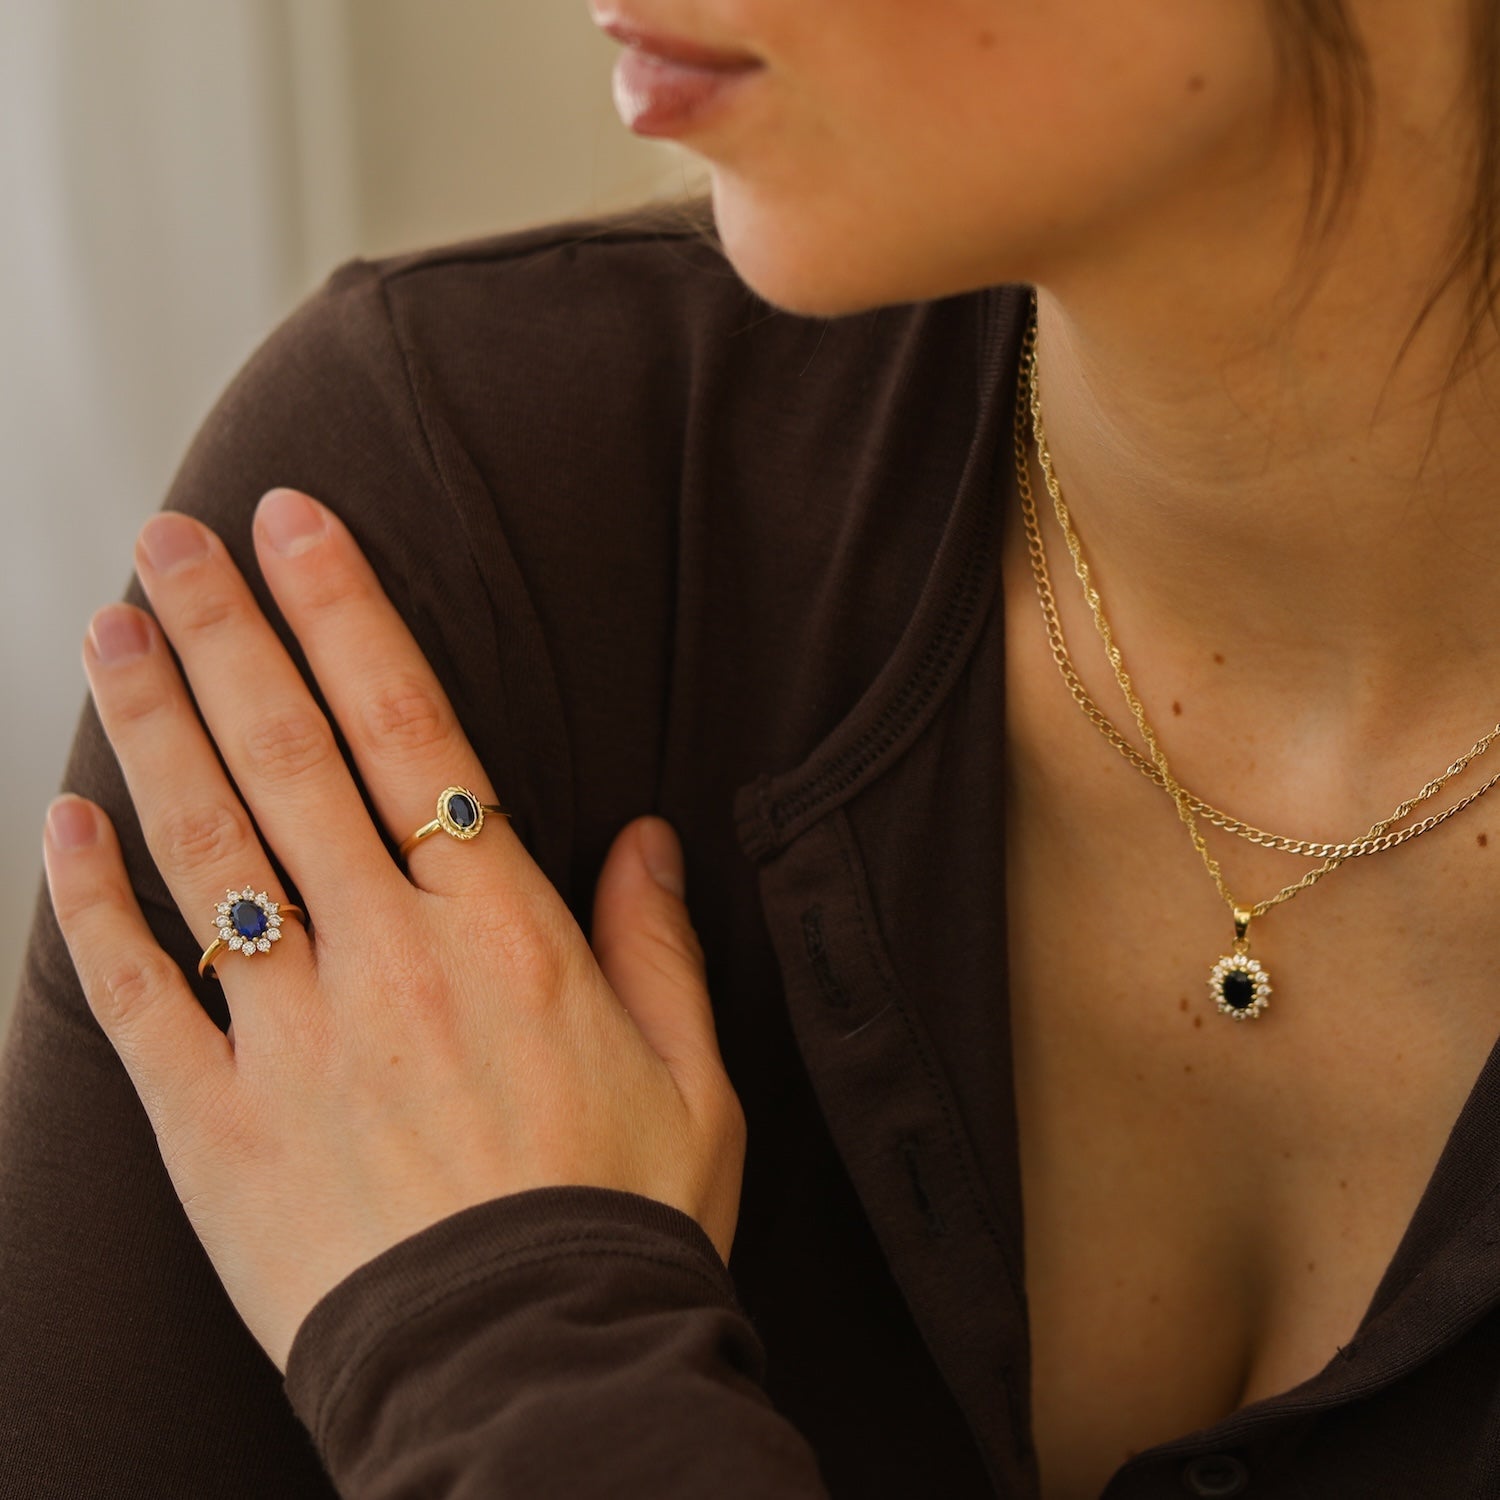 September sapphire - Birthstone ring